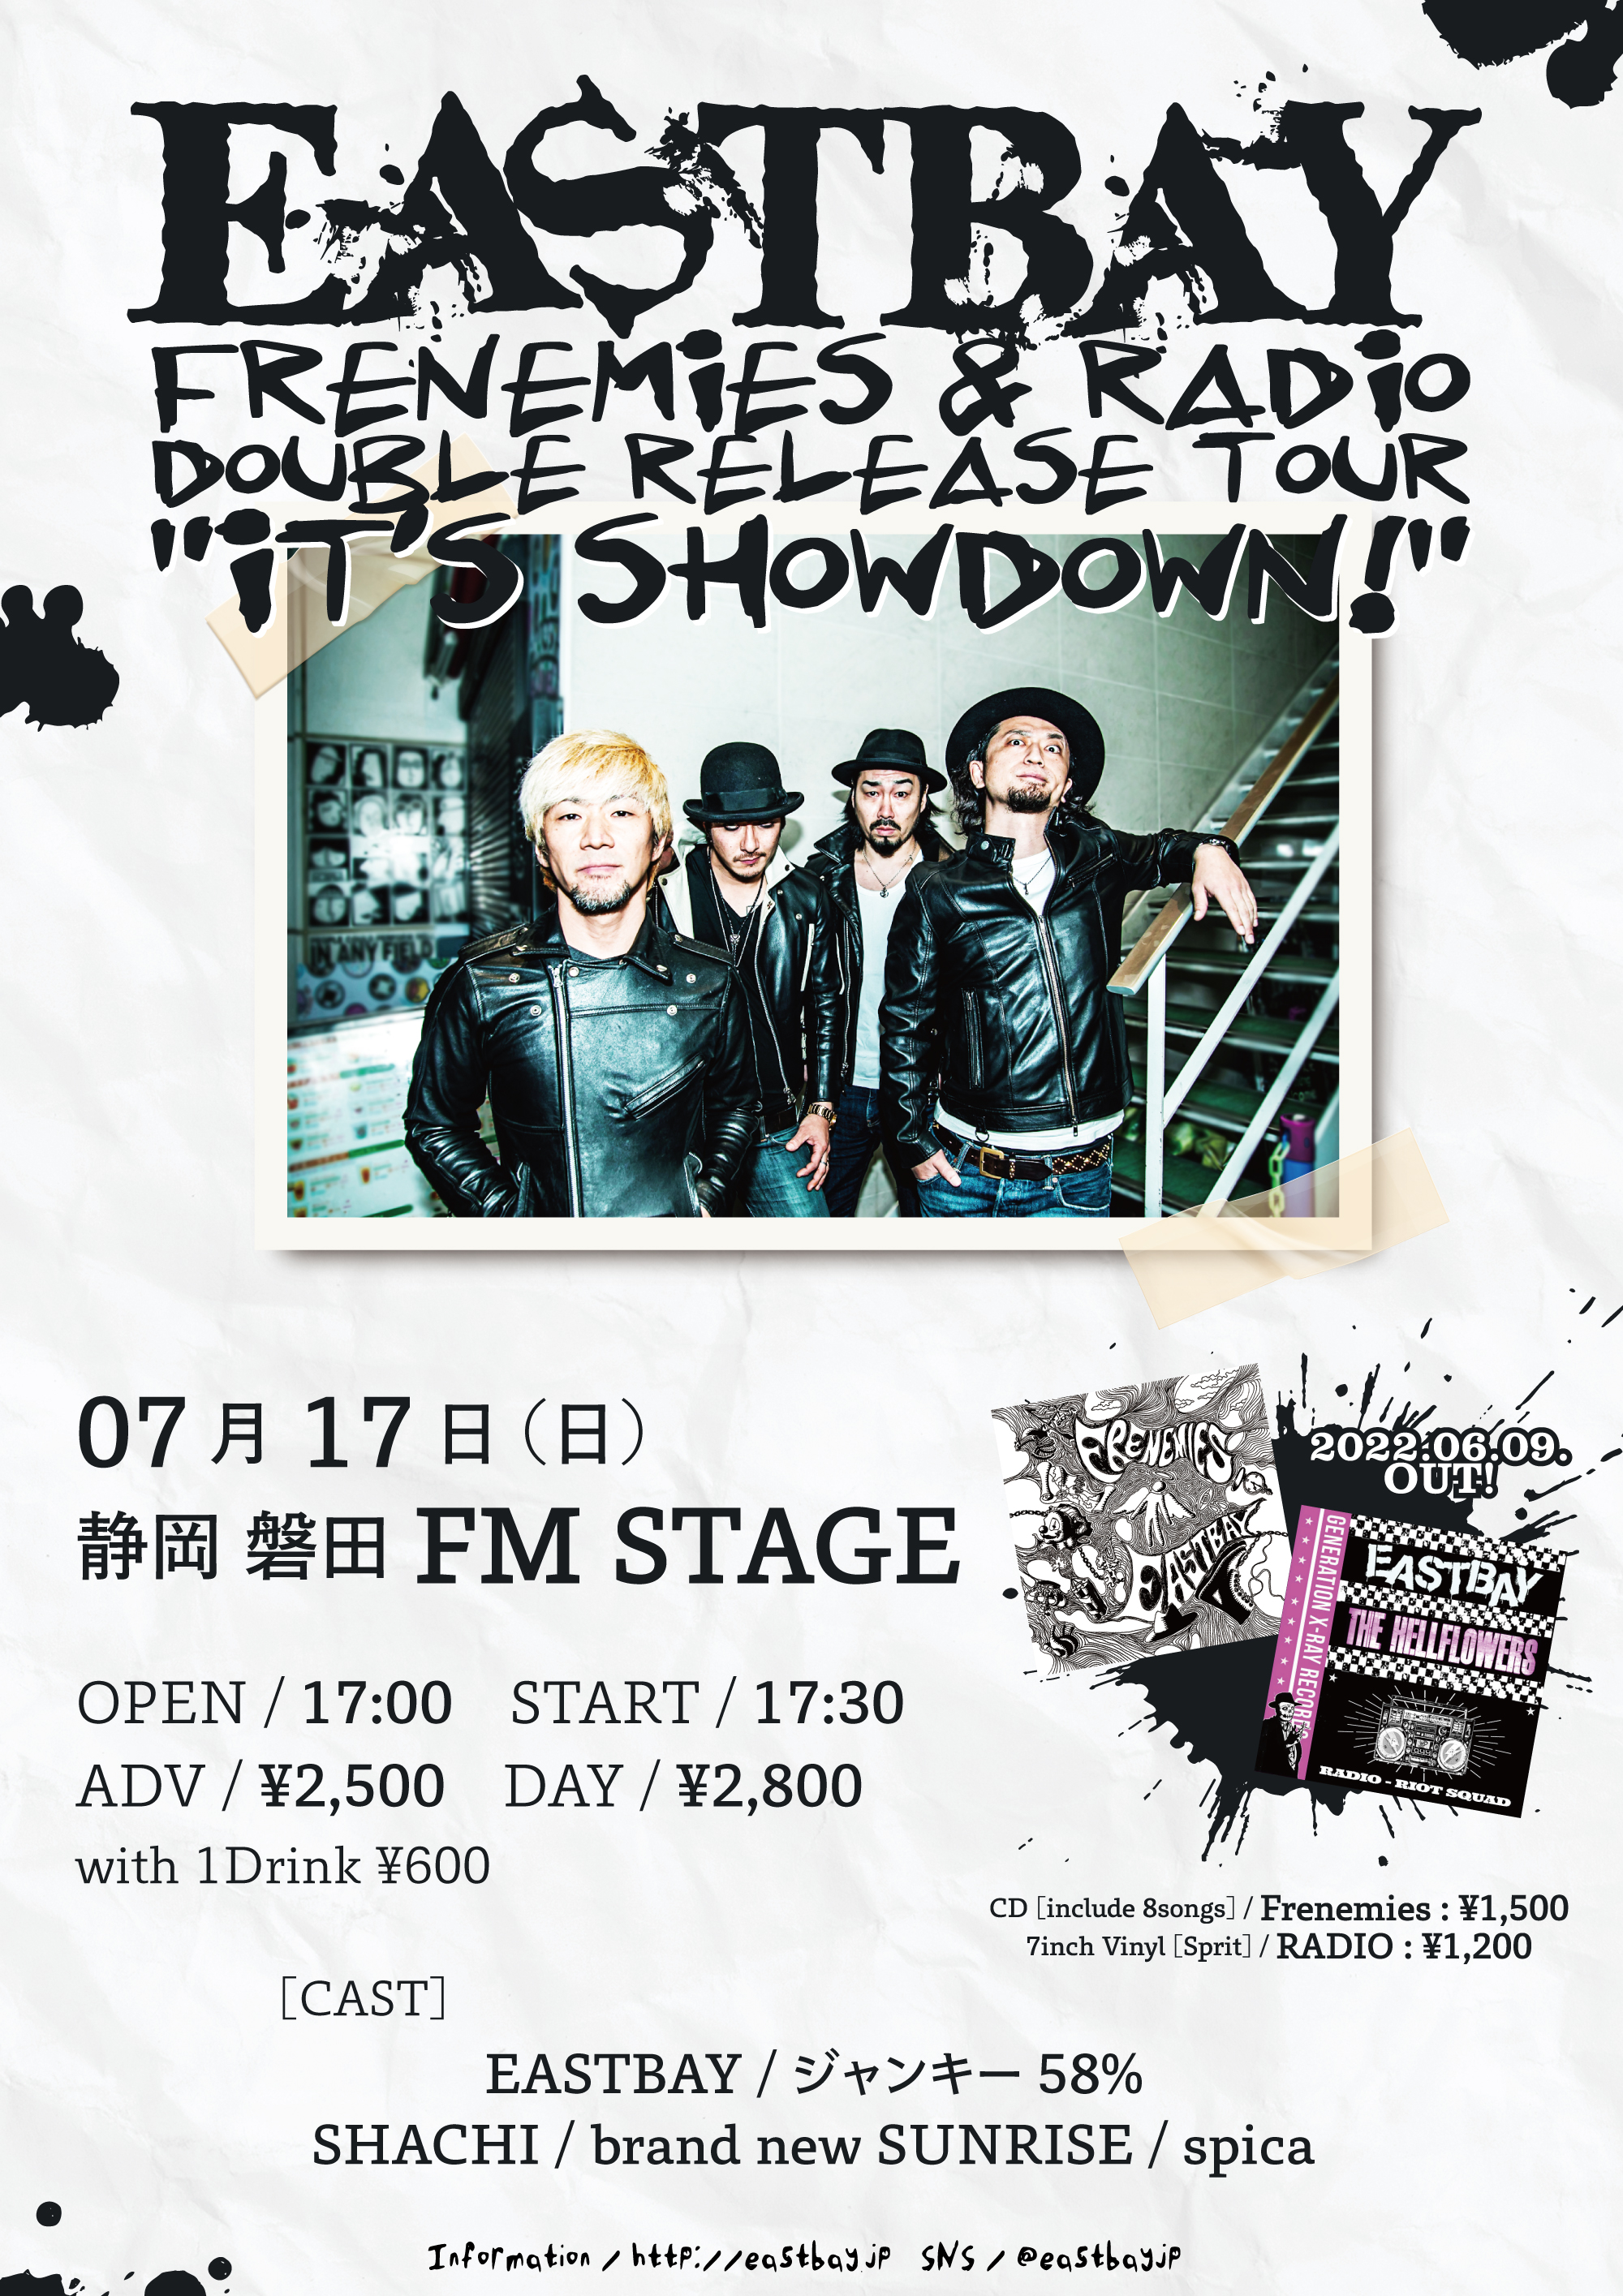 EASTBAY Release Tour “It’s Showdown!” in Iwataの写真